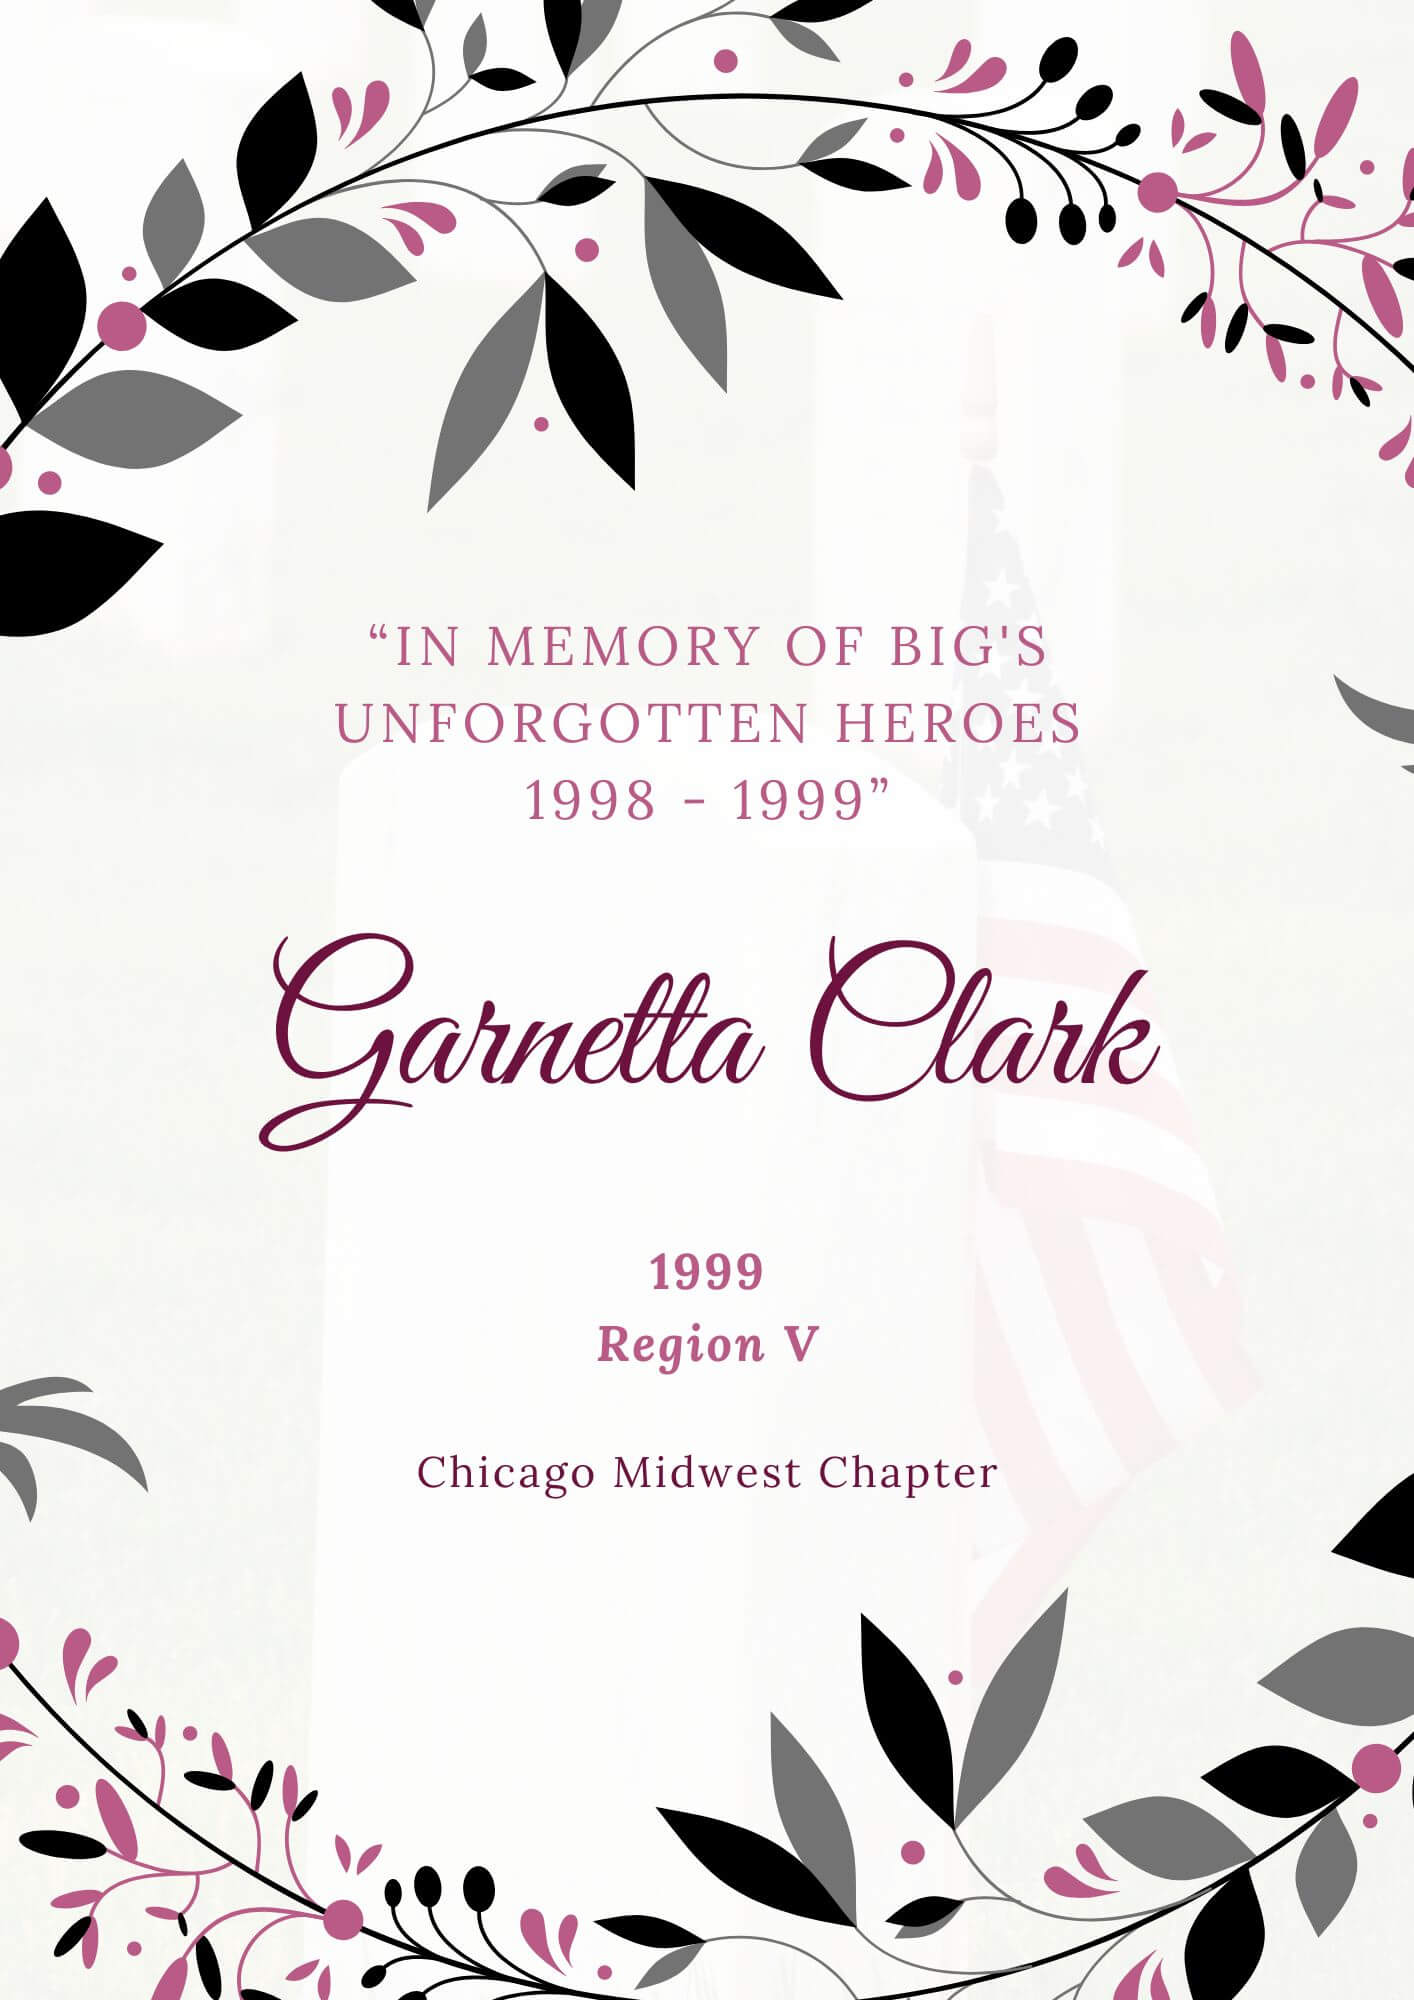 Garnetta Clark